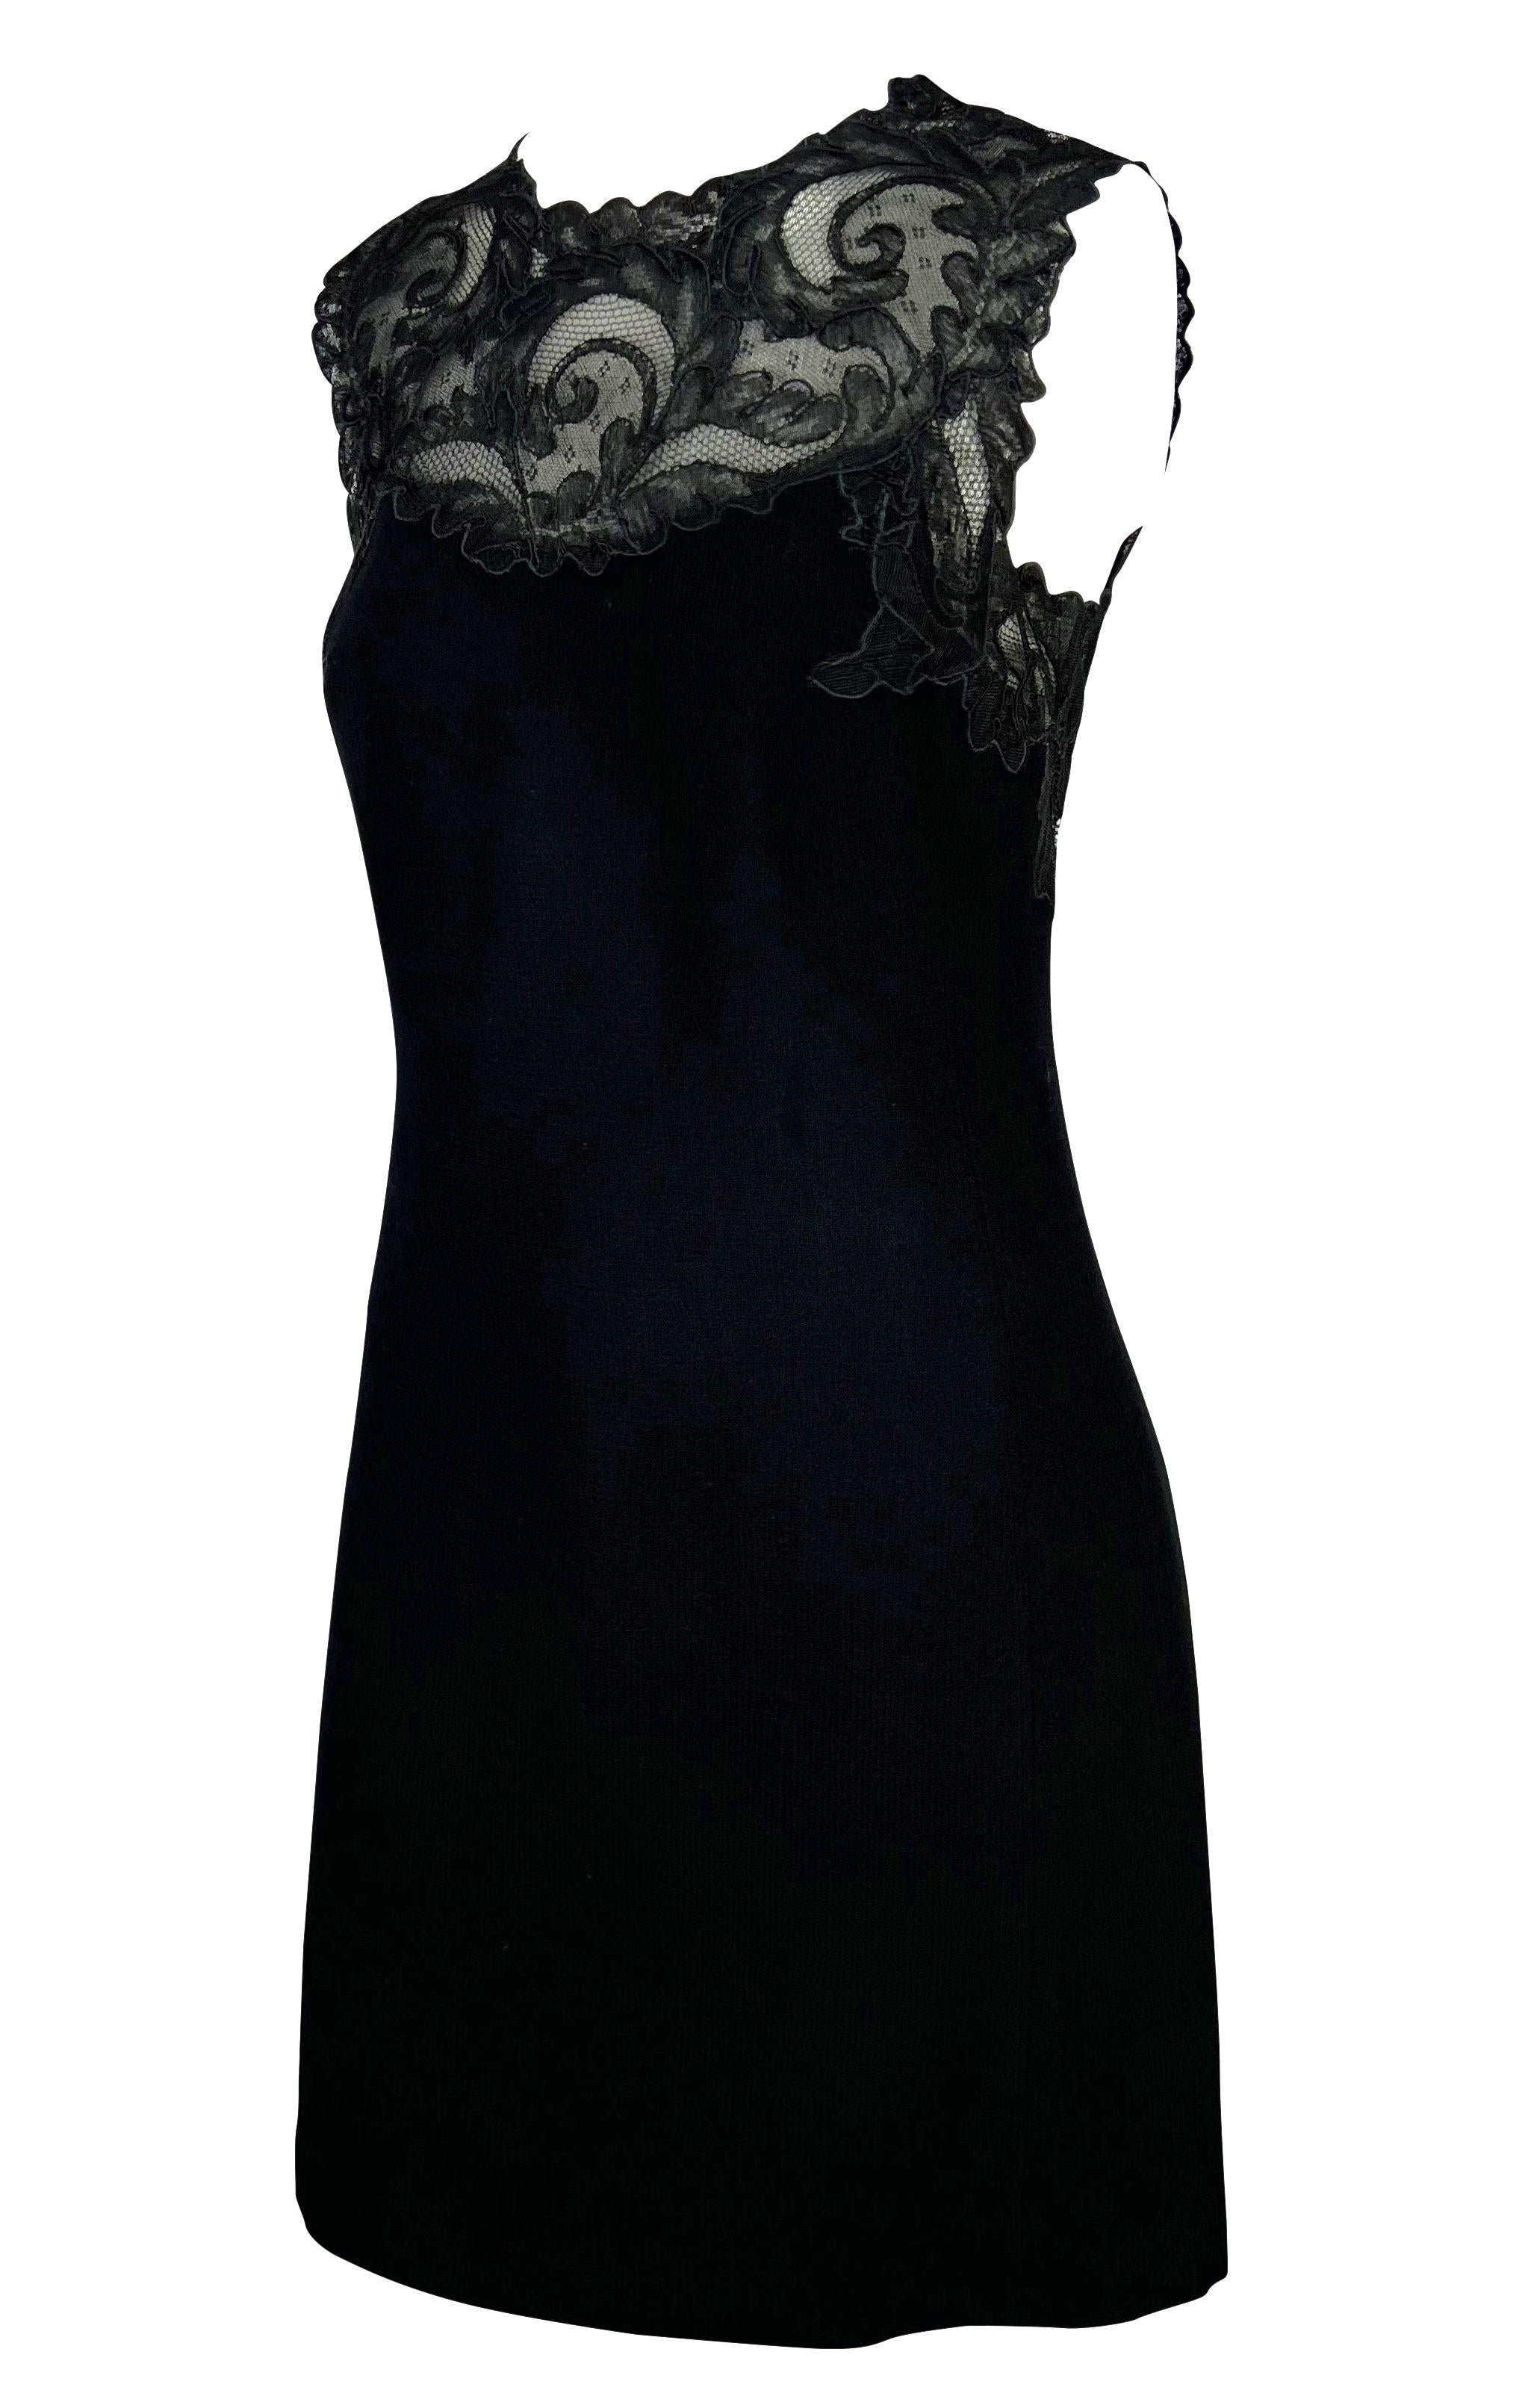 Nous vous présentons une fabuleuse robe Gianni Versace Couture en dentelle noire, conçue par Gianni Versace. Issue de la collection Automne/Hiver 1996, cette magnifique robe en laine stretch sans manches est agrémentée d'une dentelle complexe